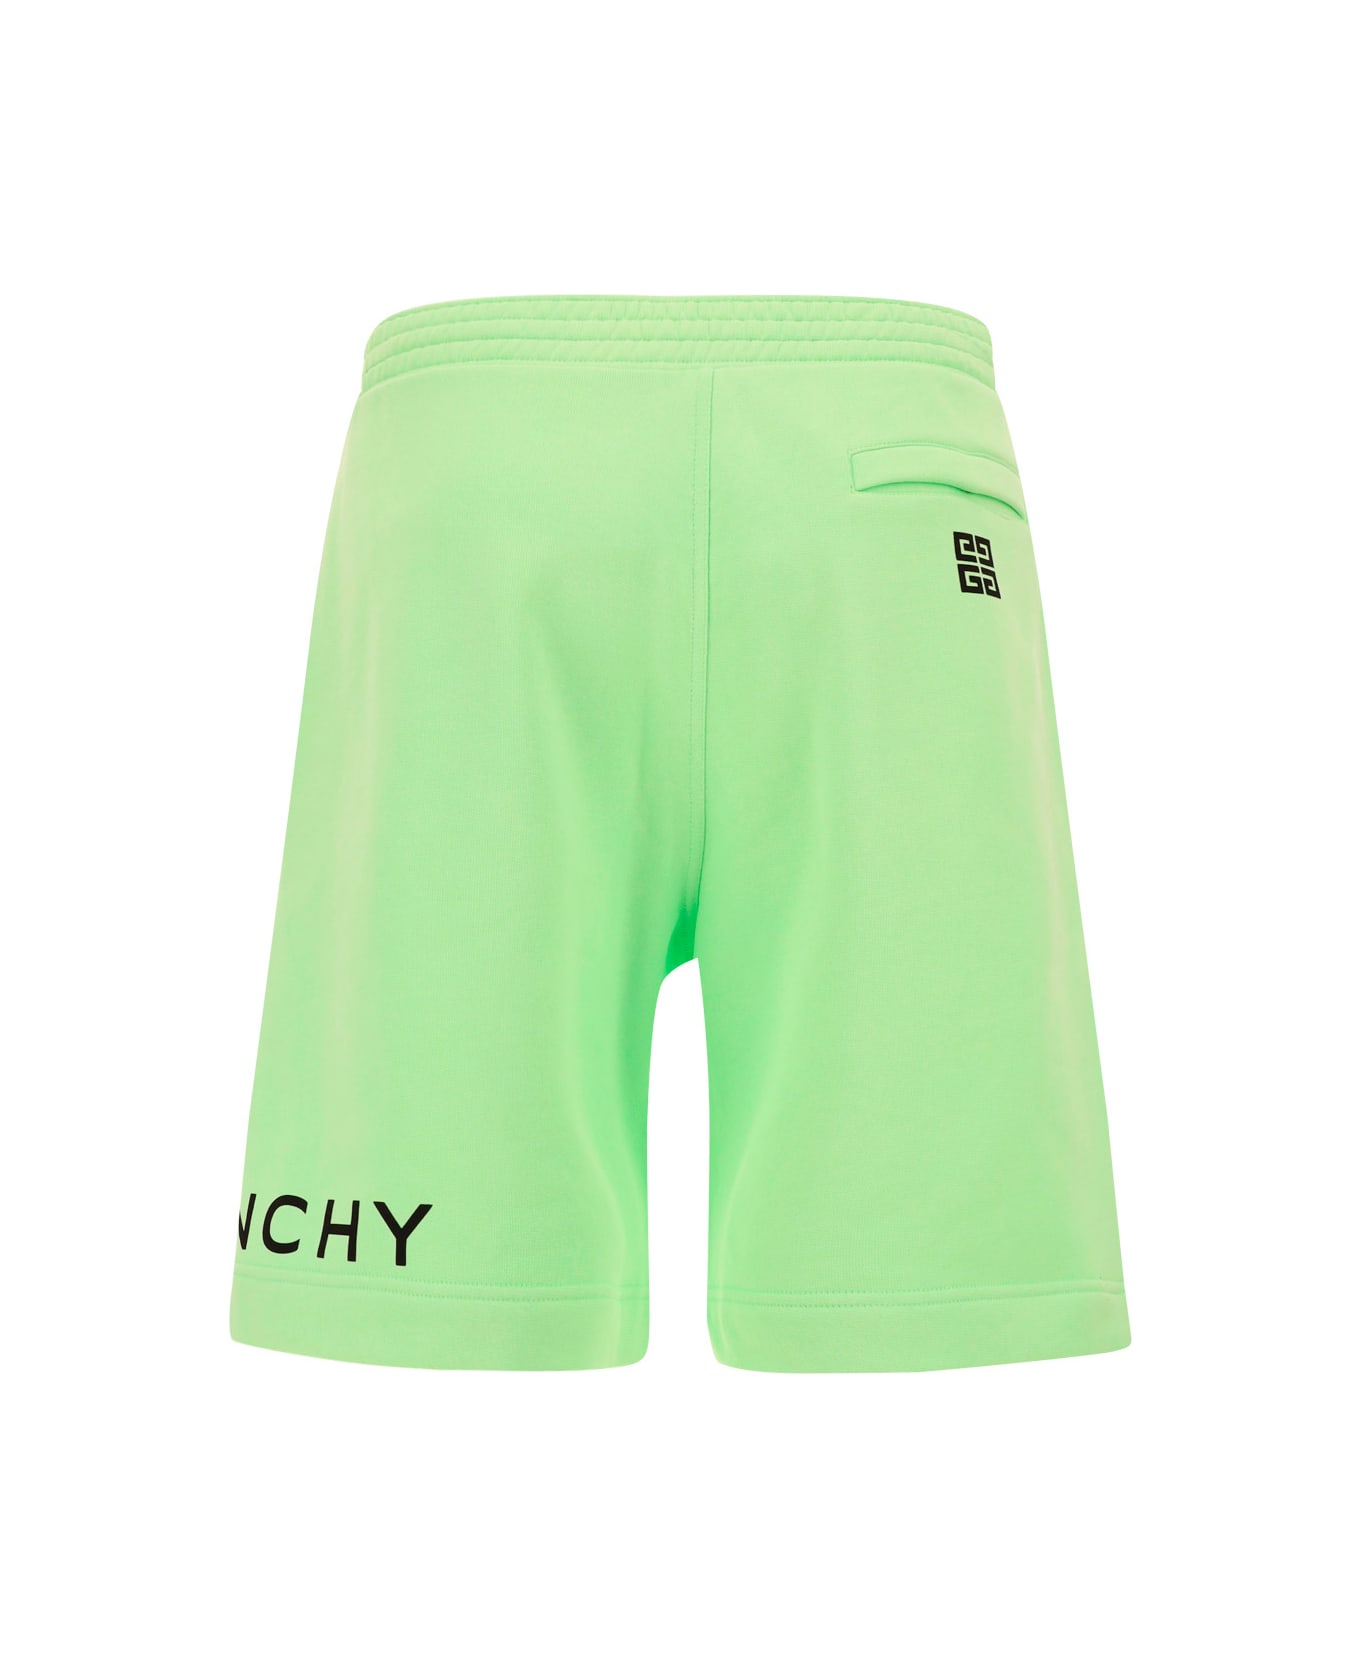 Givenchy Short Pants - Mint Green